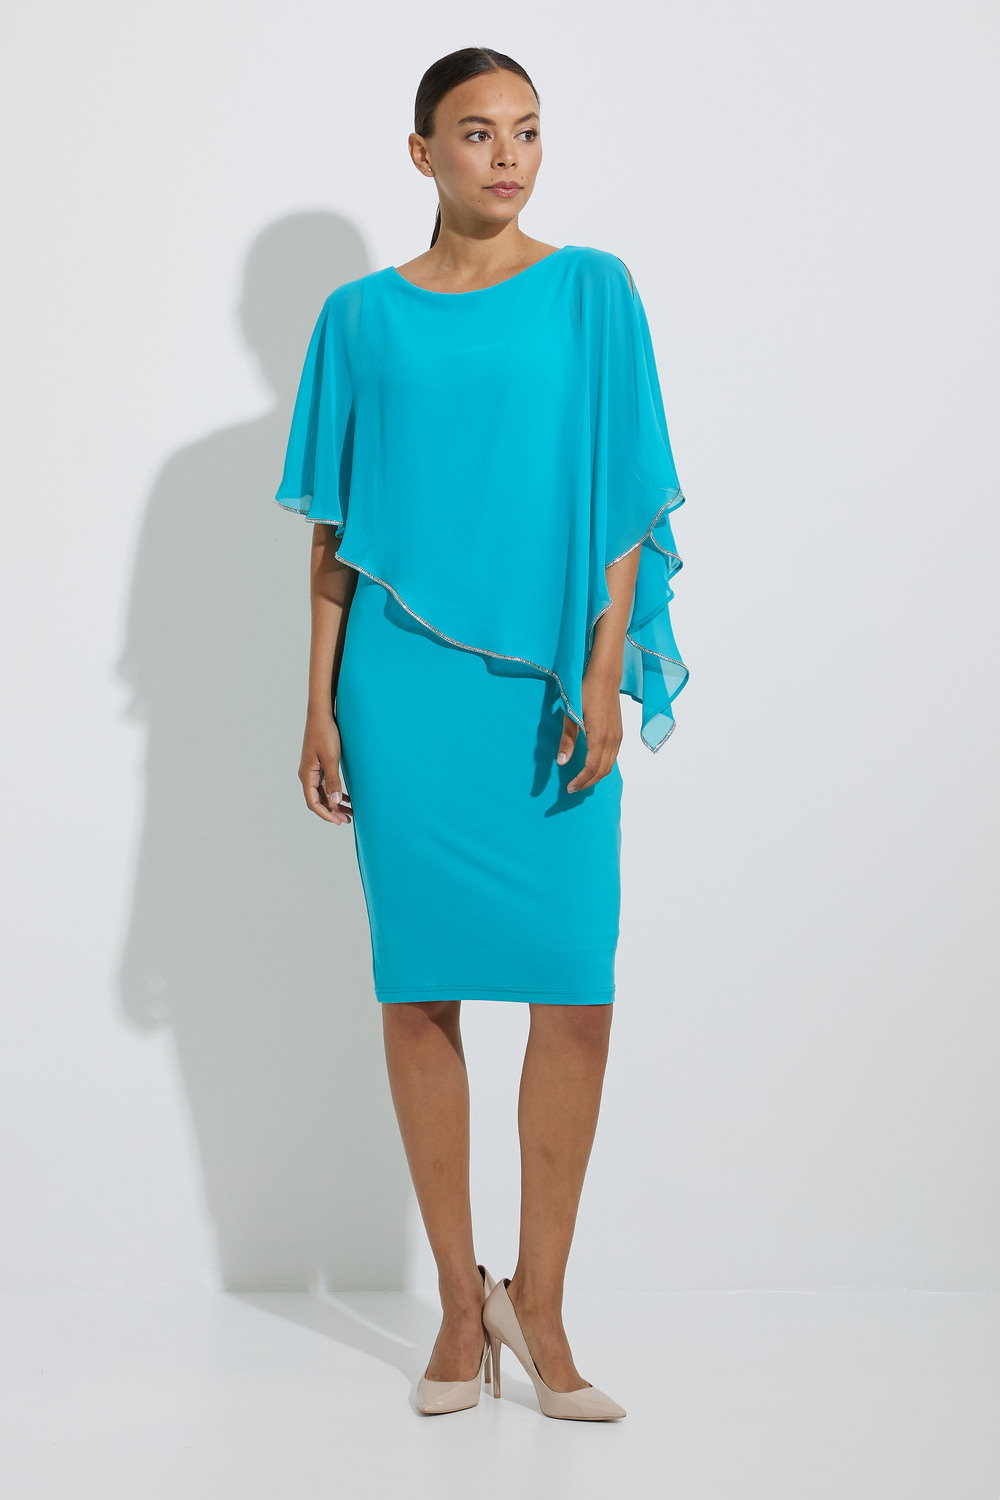 Joseph Ribkoff Layered Dress Style 221062 - NOW 223762. Aruba Blue